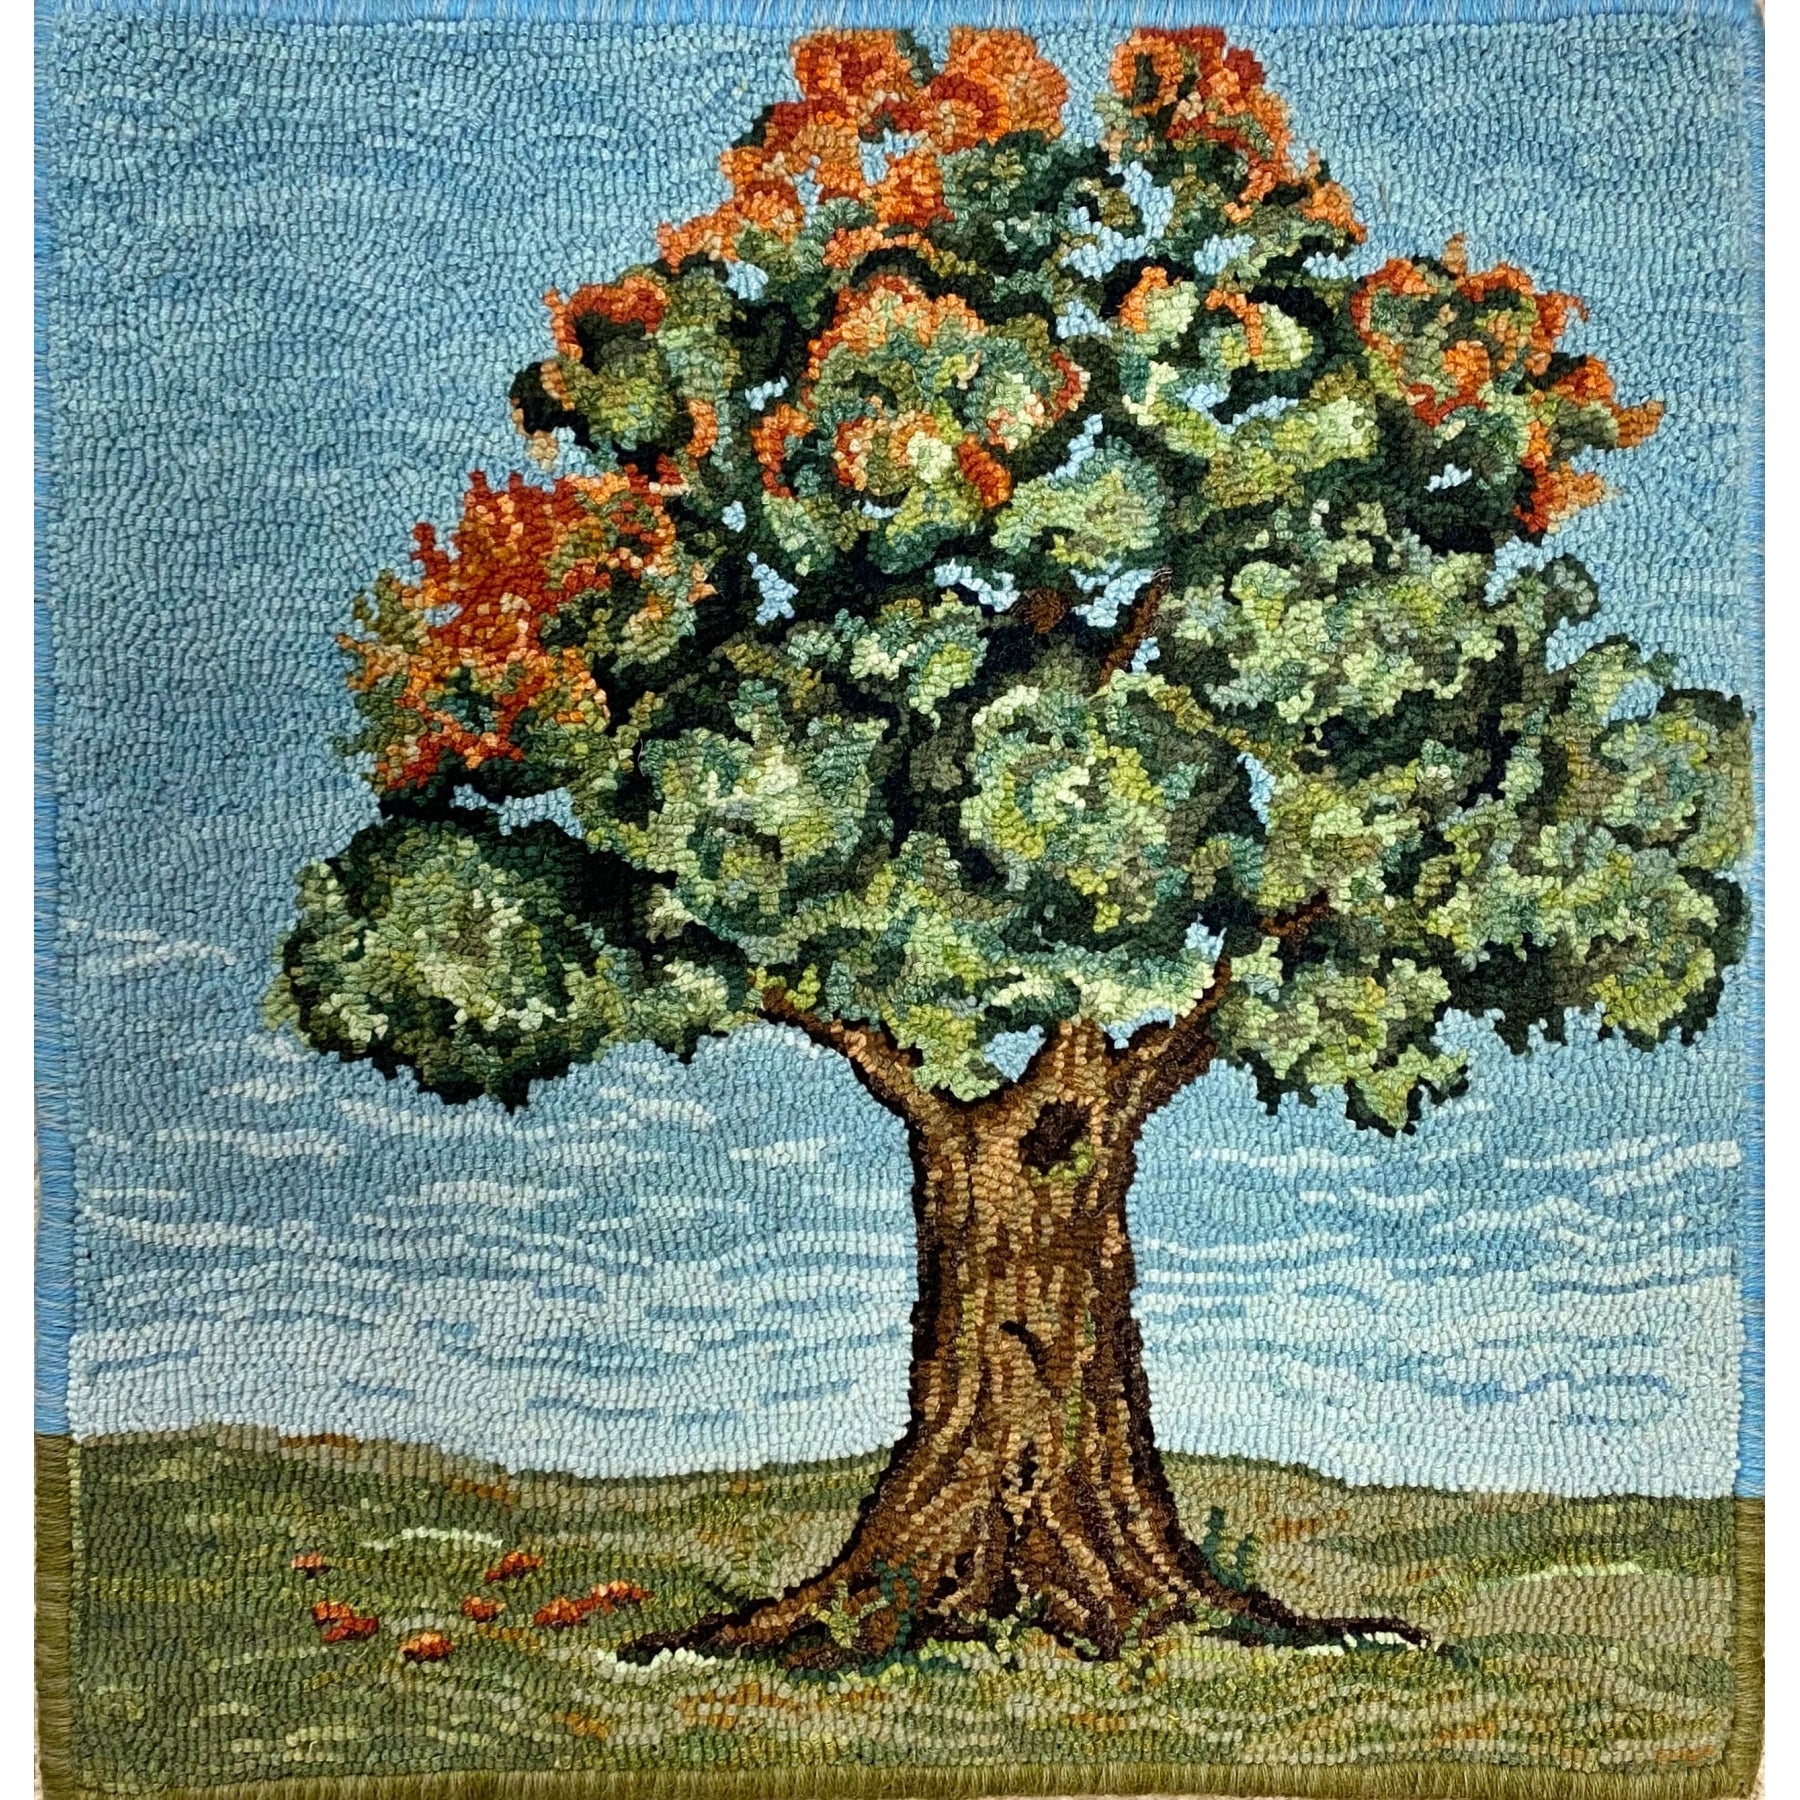 Tree III, rug hooked by Linda Powell